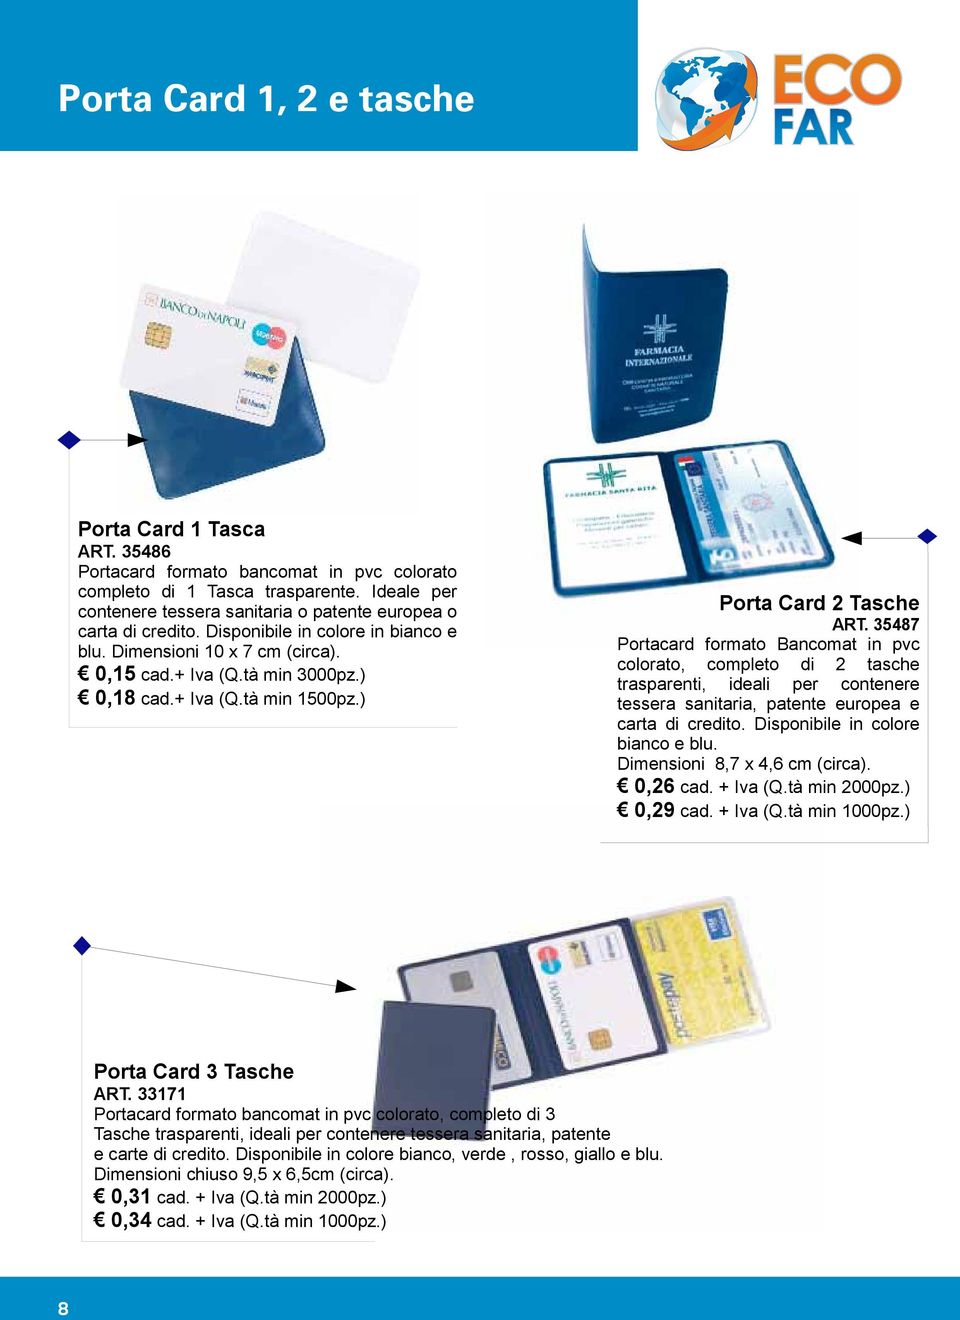 ) Porta Card 2 Tasche ART. 35487 Portacard formato Bancomat in pvc colorato, completo di 2 tasche trasparenti, ideali per contenere tessera sanitaria, patente europea e carta di credito.